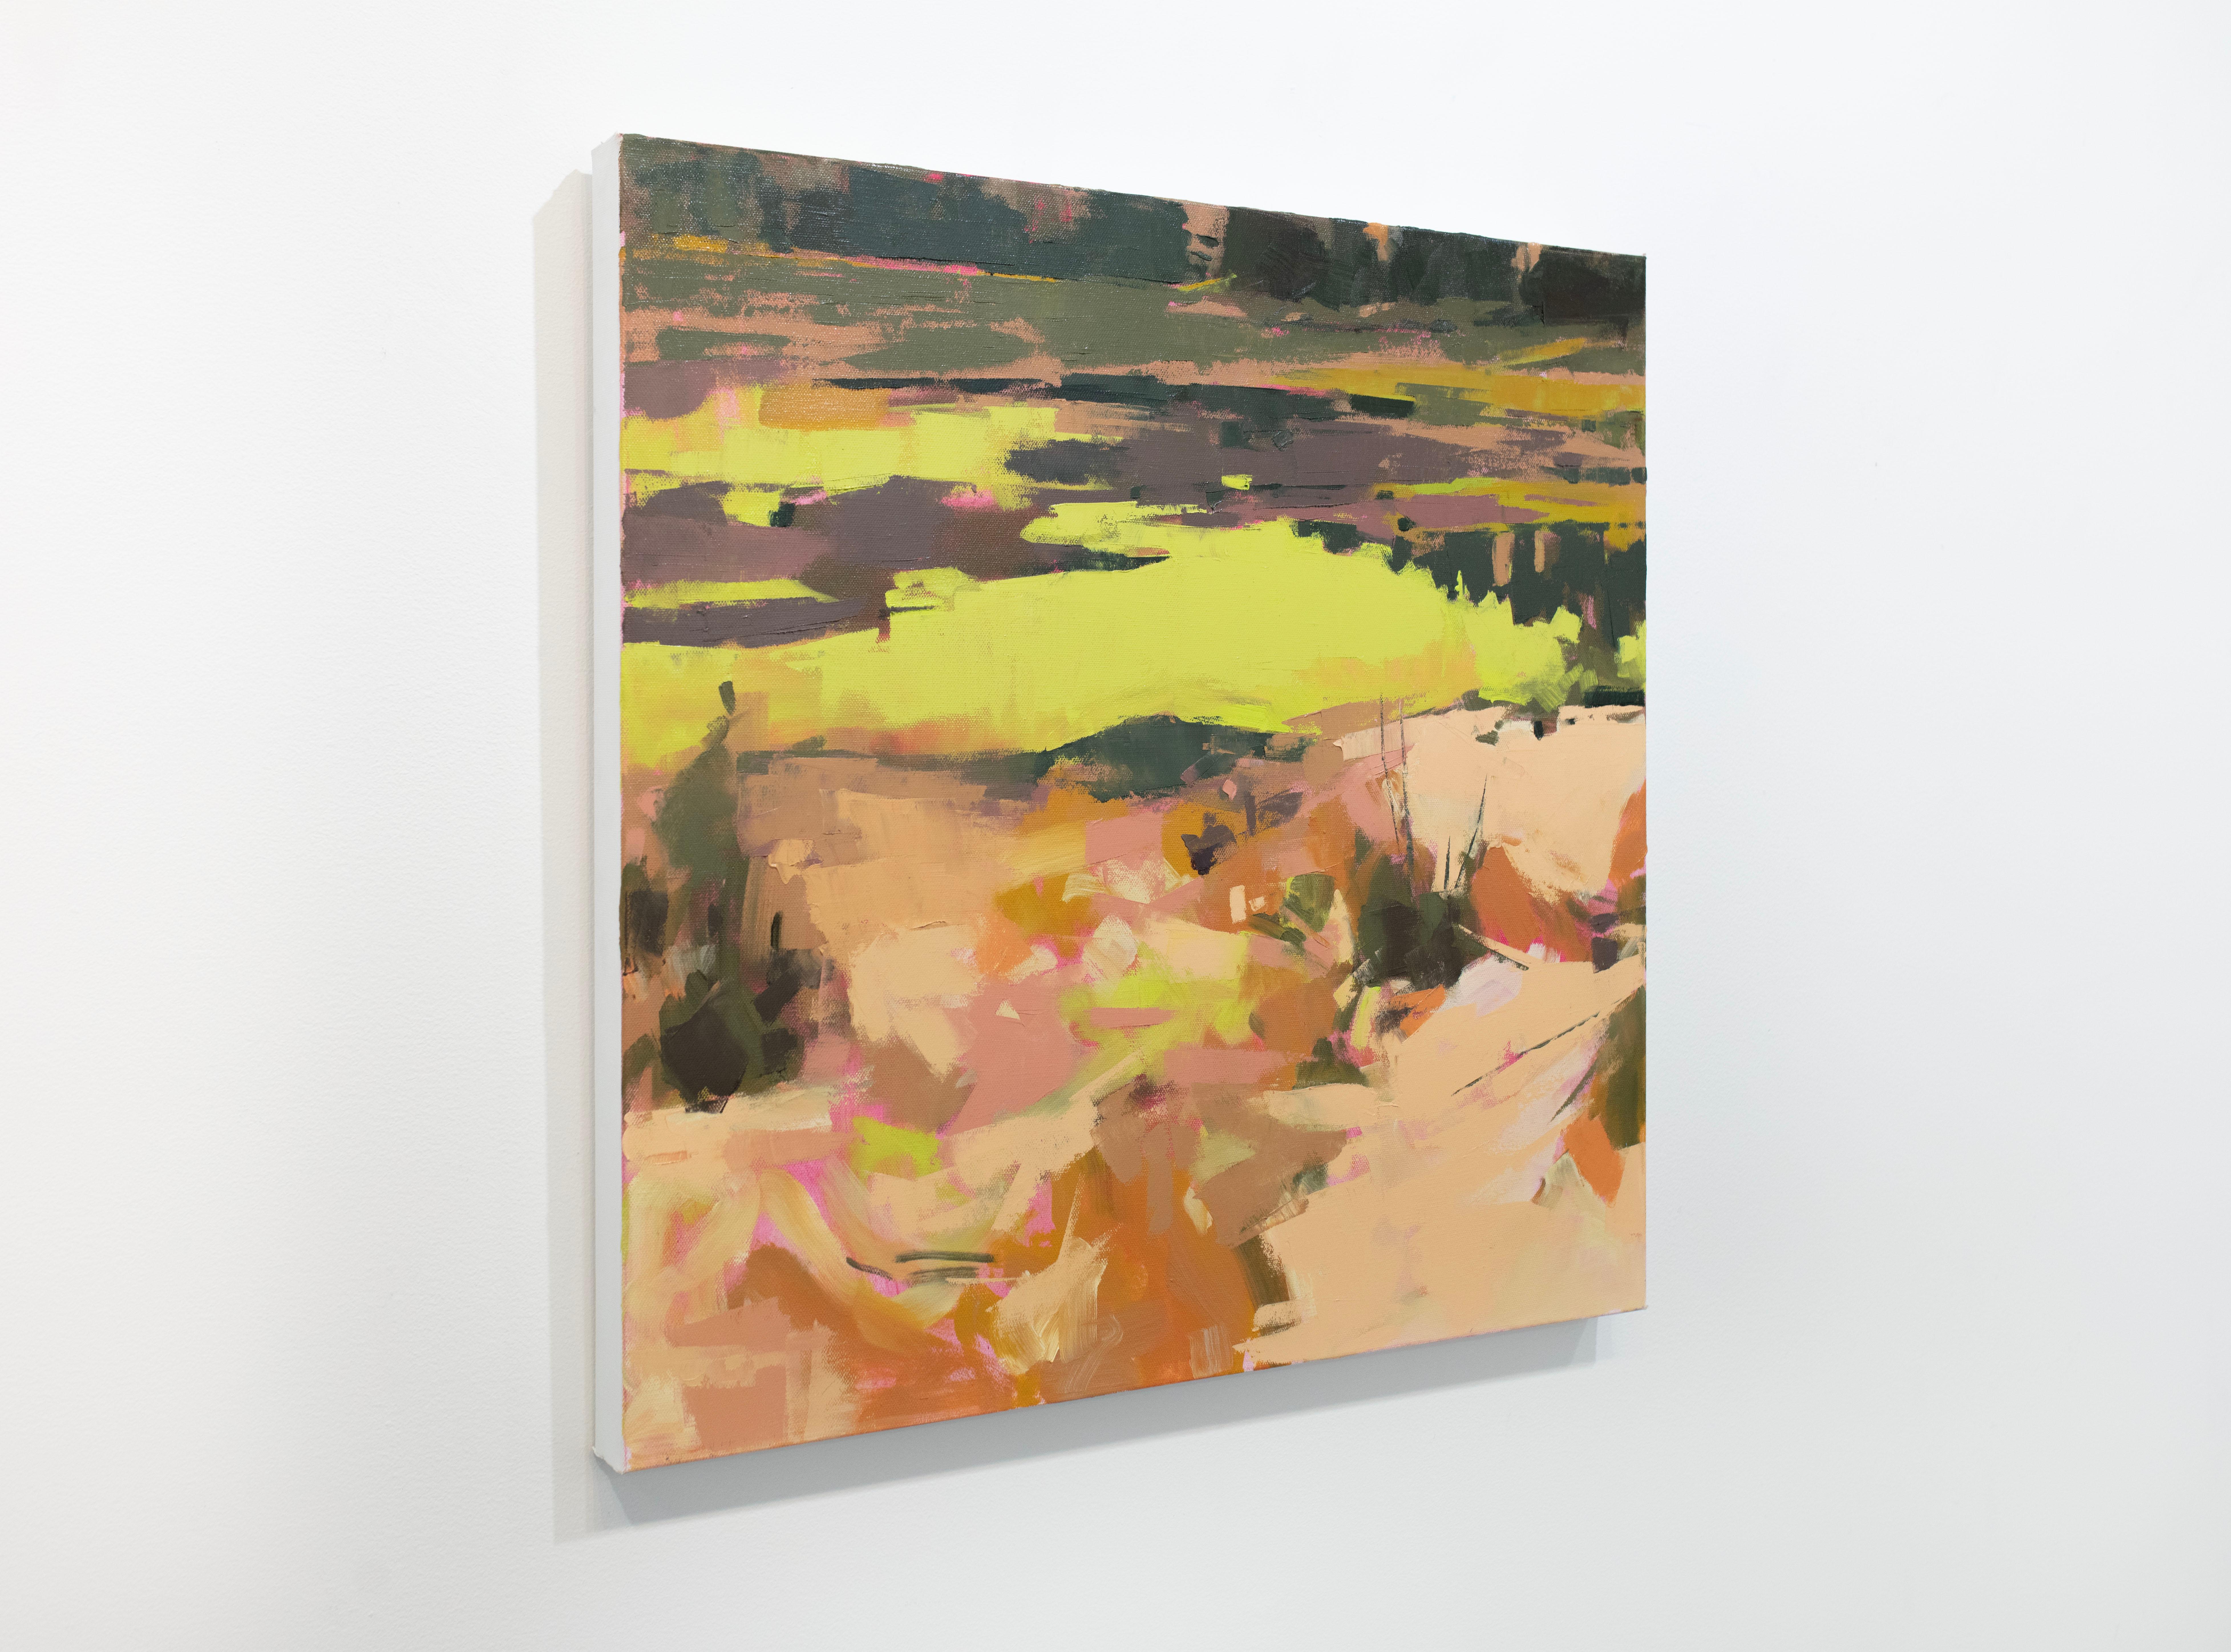 Cette peinture à l'huile originale de paysage abstrait de l'artiste Bri Custer présente une palette de tons orangés et de terre contrastés par un jaune vibrant, et des touches de peinture épaisses et lâches appliquées sur la surface de la toile. Le